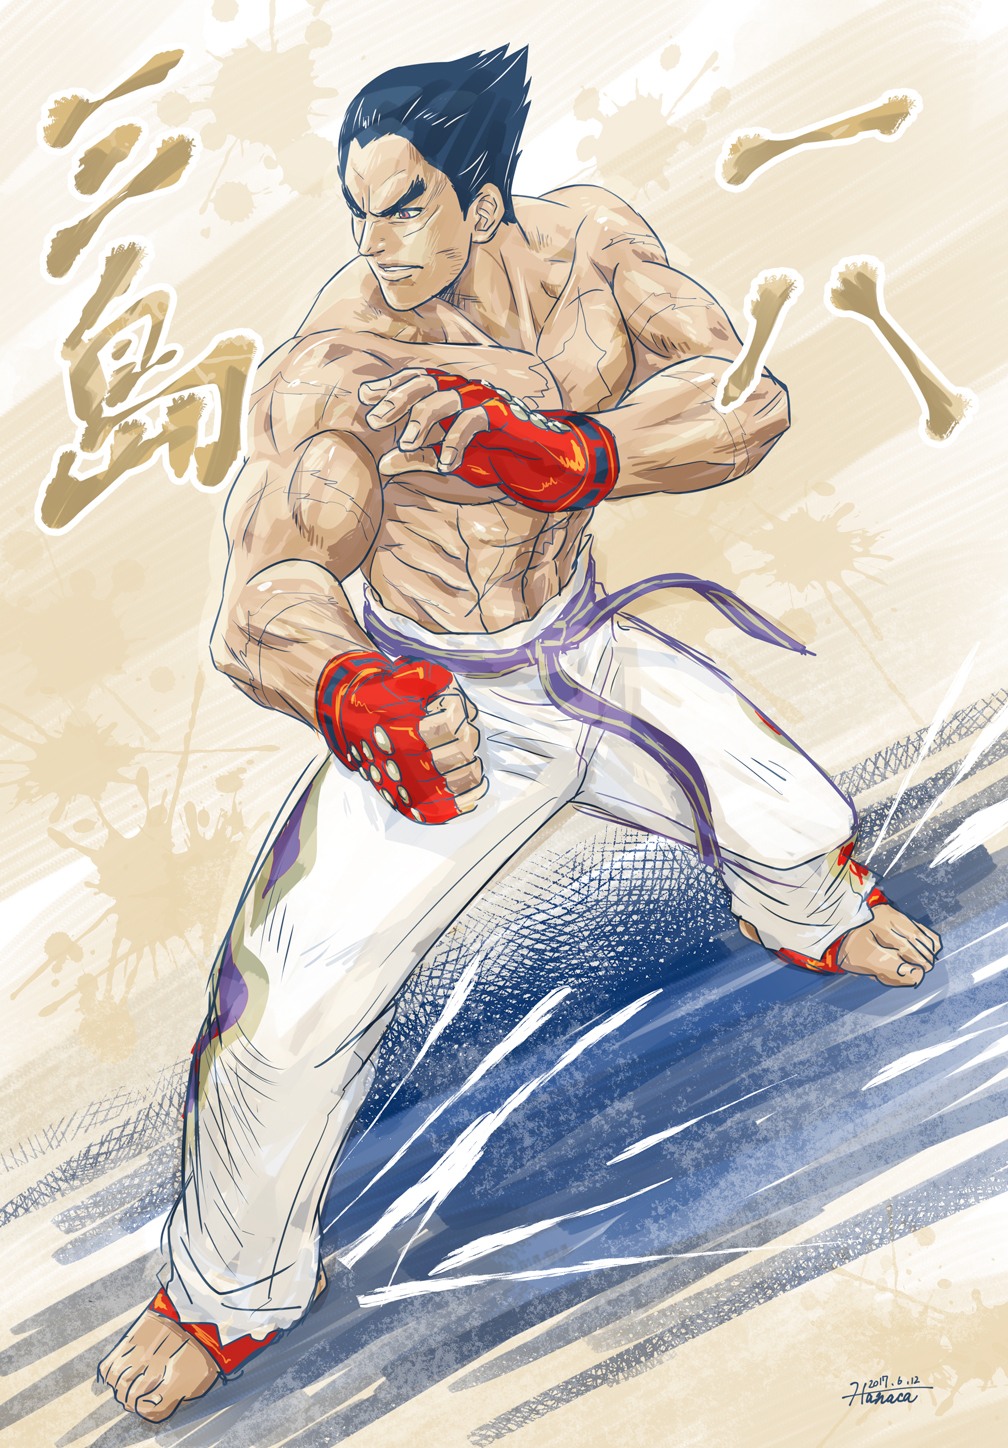 Ryu and Kazuya Mishima Fan Art by Kukurobuki